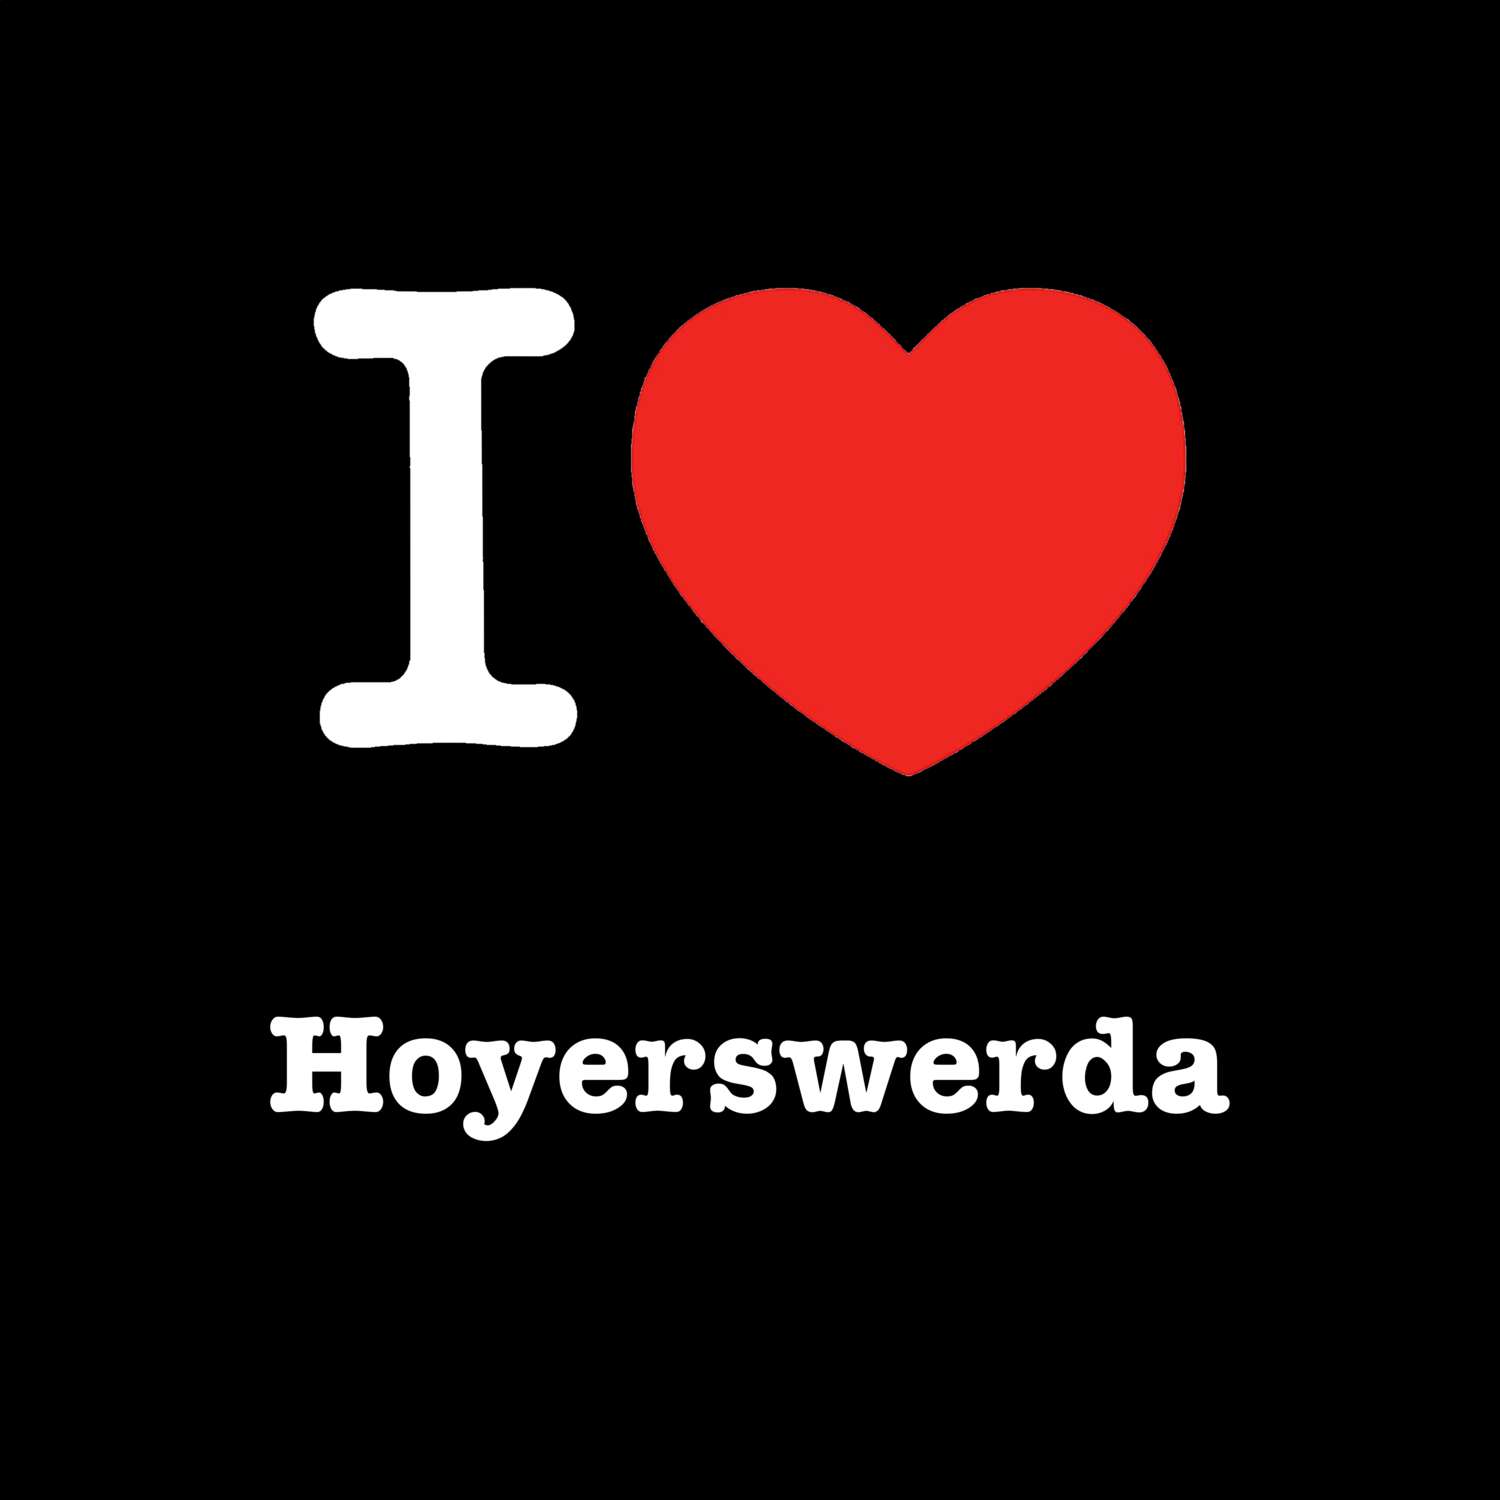 Hoyerswerda T-Shirt »I love«